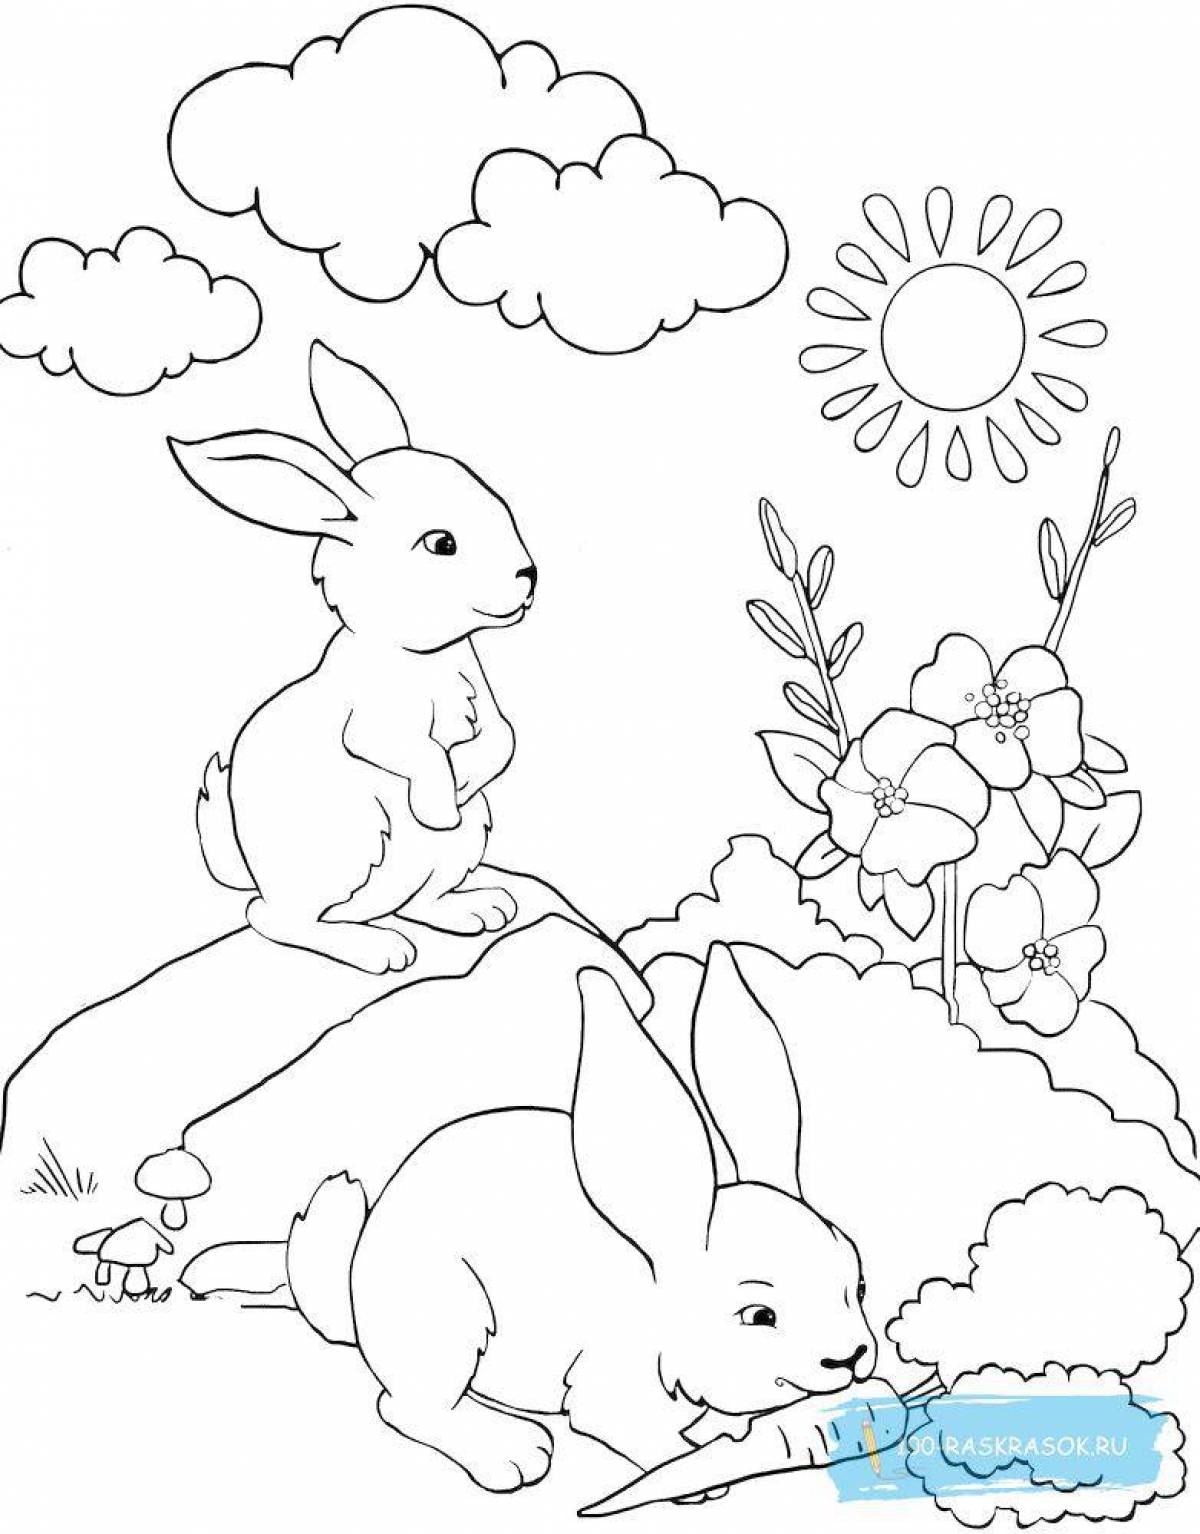 Радостная игра-раскраска кролика